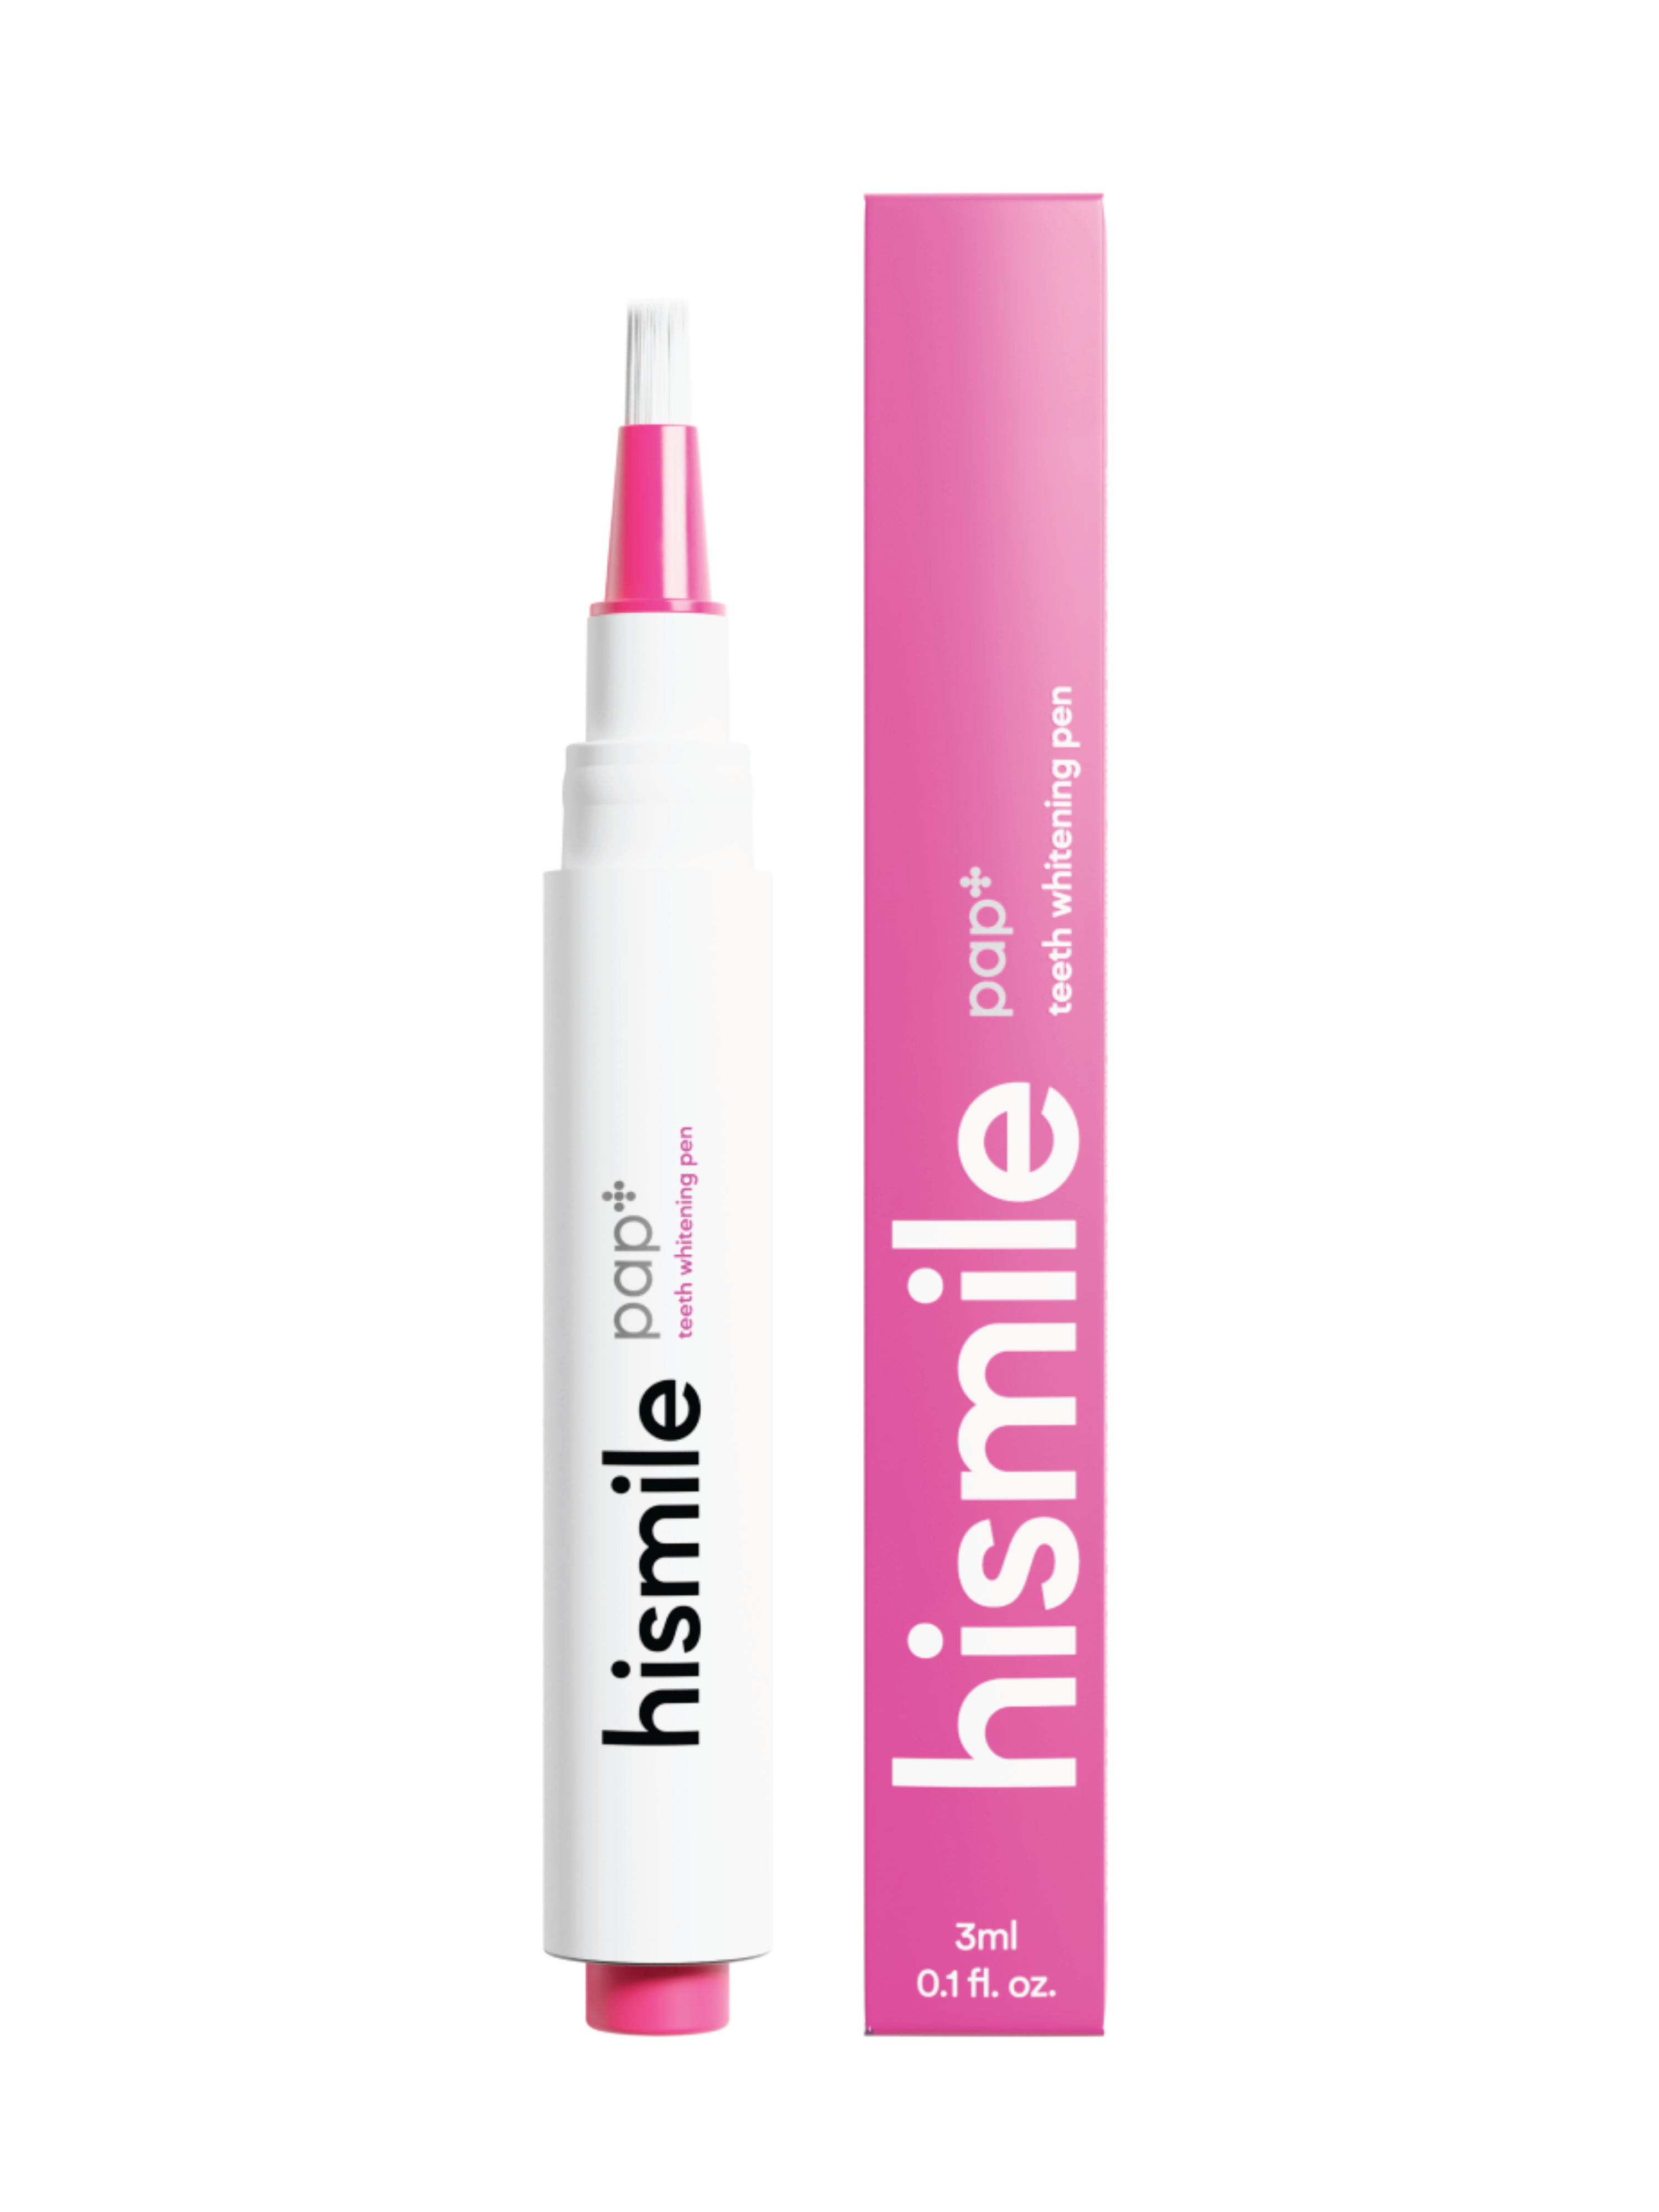 Hismile PAP+ Teeth Whitening Pen, 3 ml